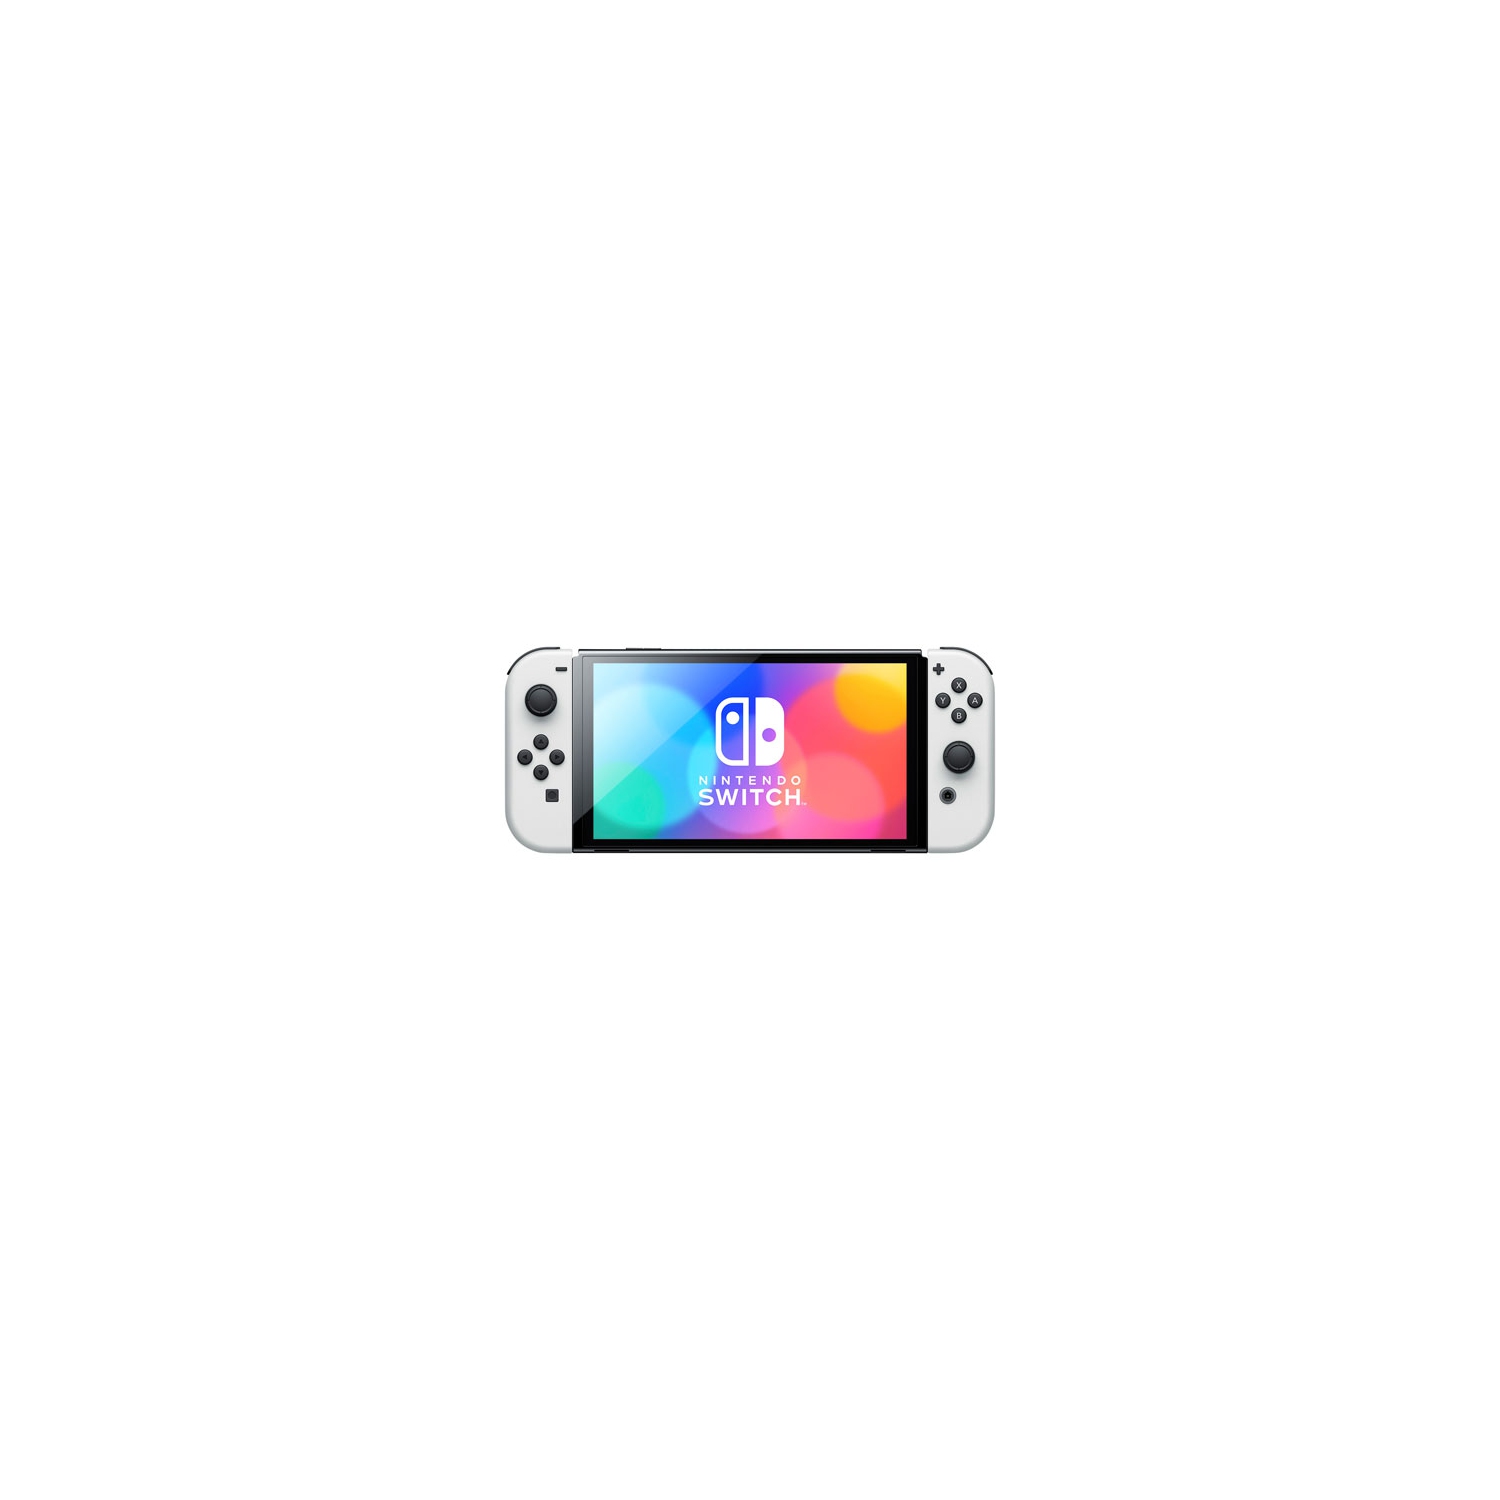 Refurbished (Good) - Nintendo Switch (OLED Model) Console - White